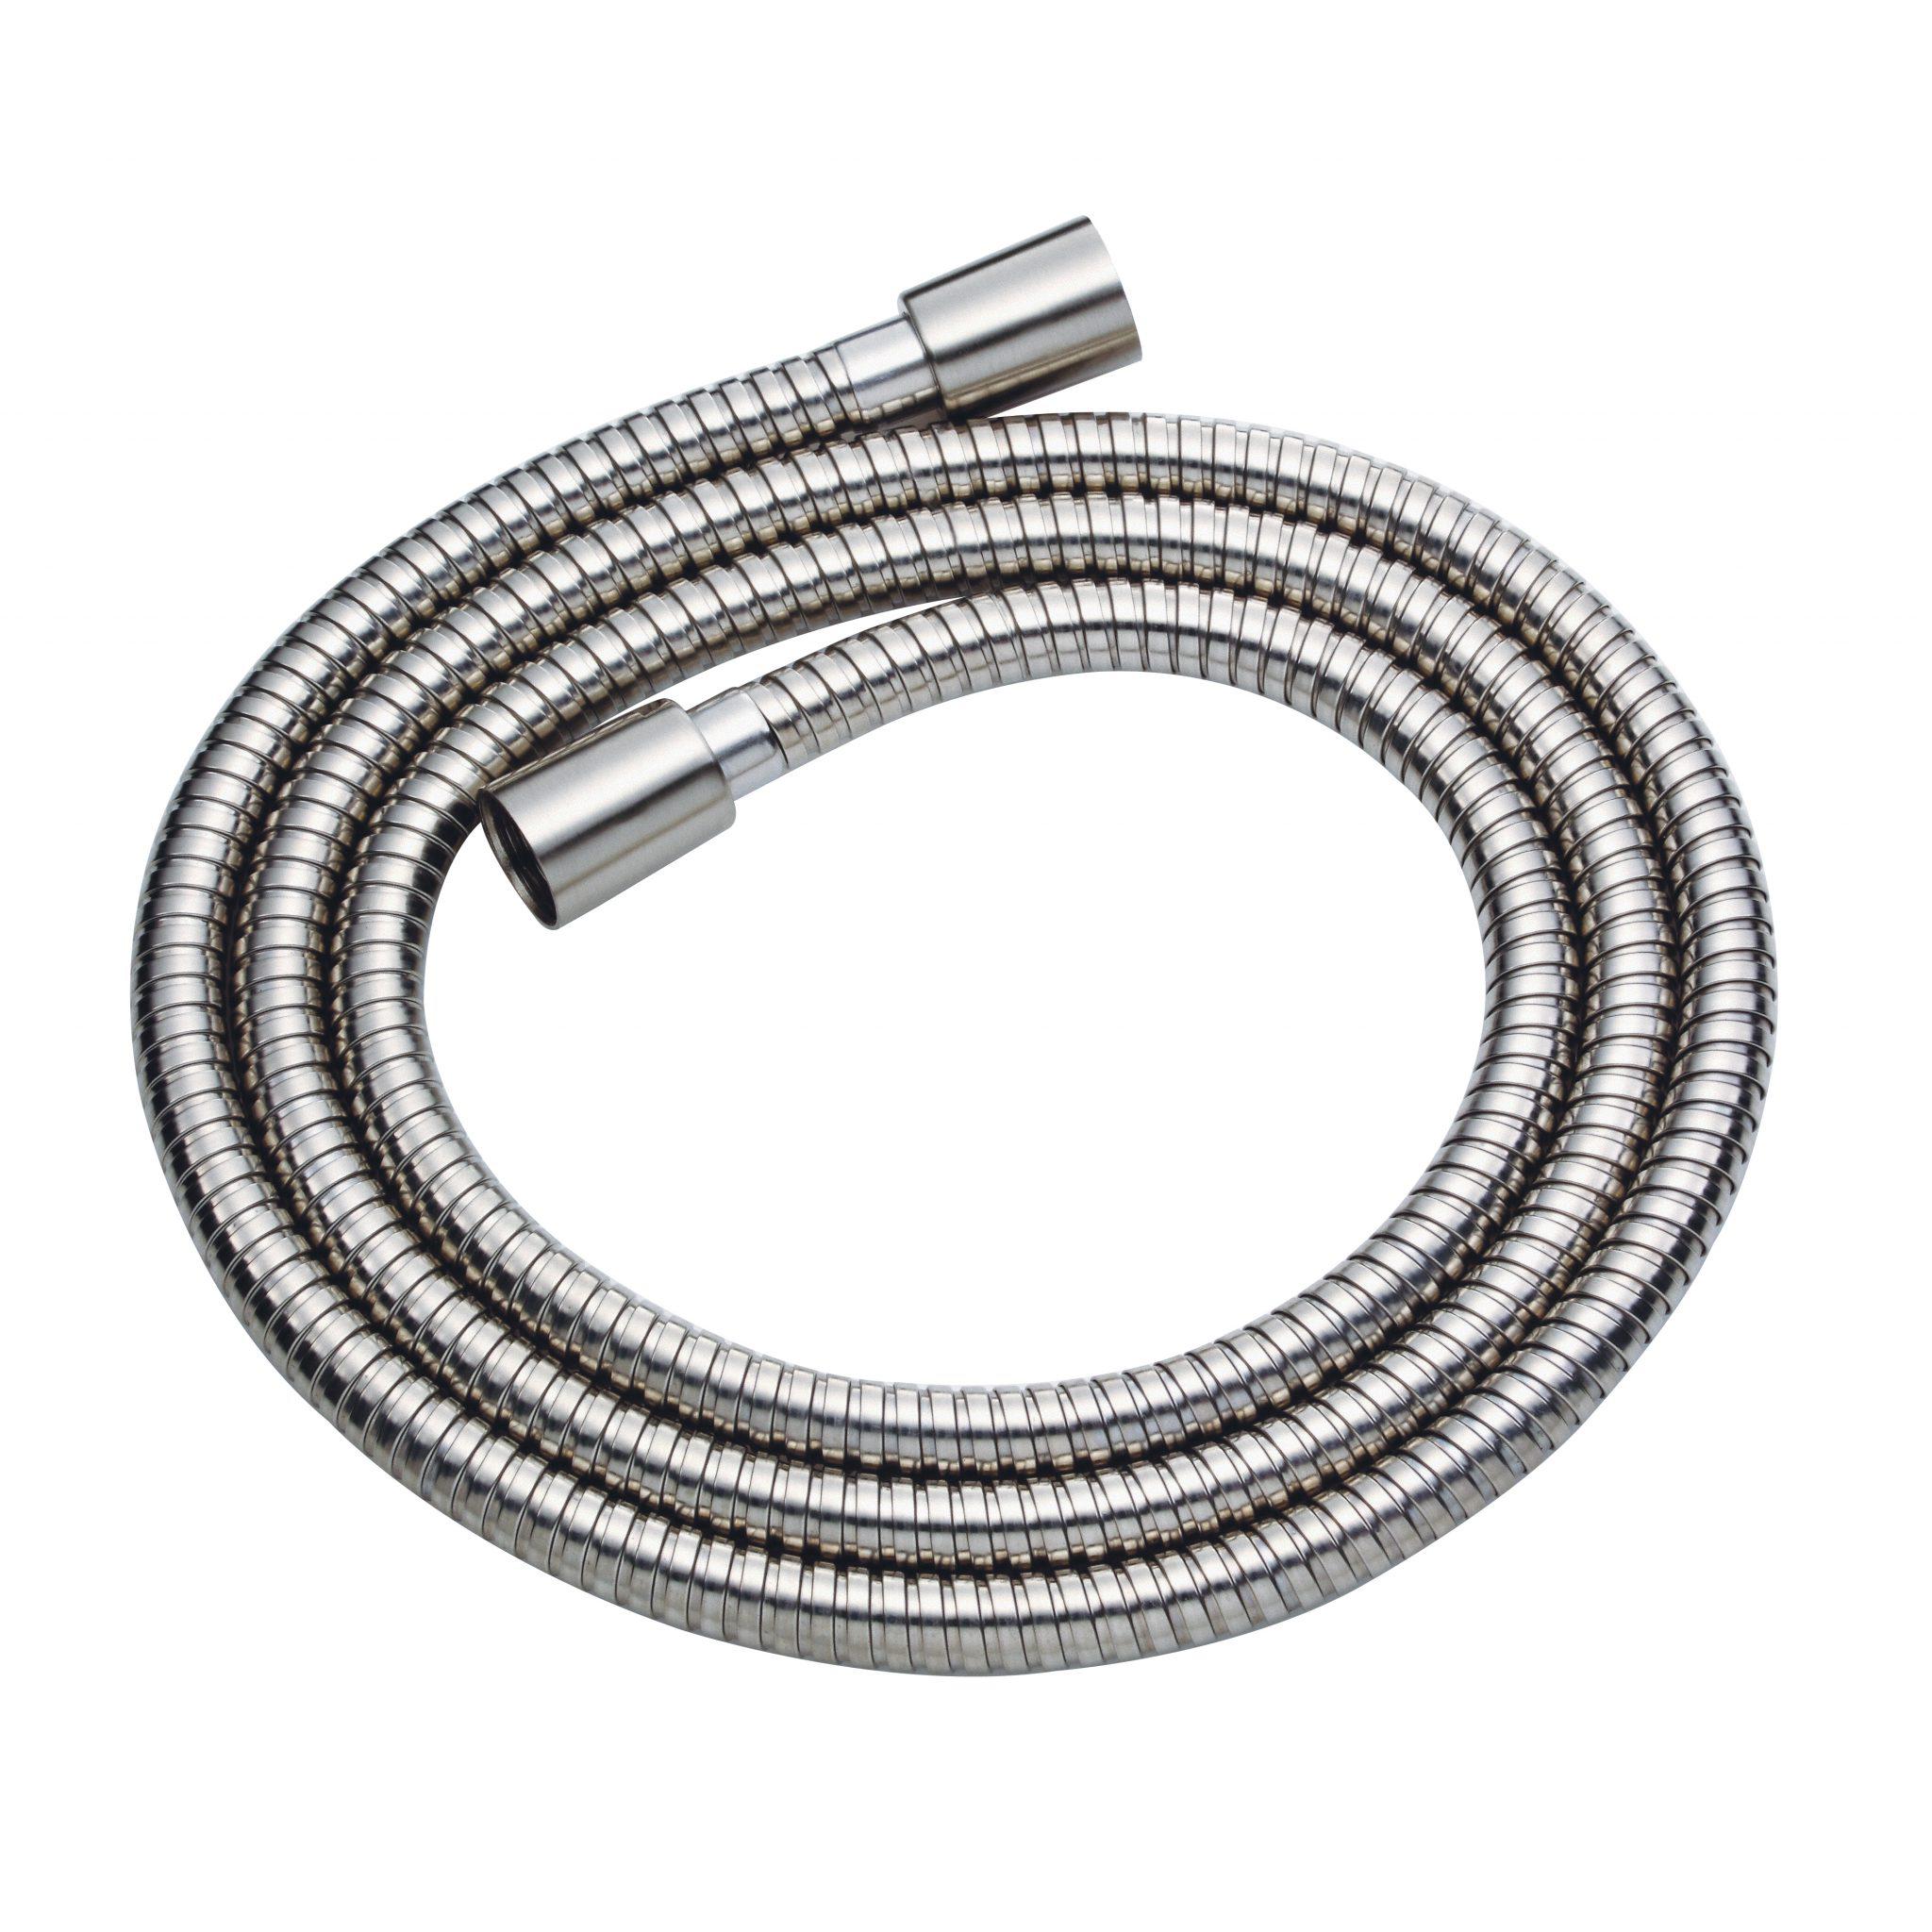 Danze D469020 72" All Metal Interlock Shower Hose w/ Brass Conicals - Chrome